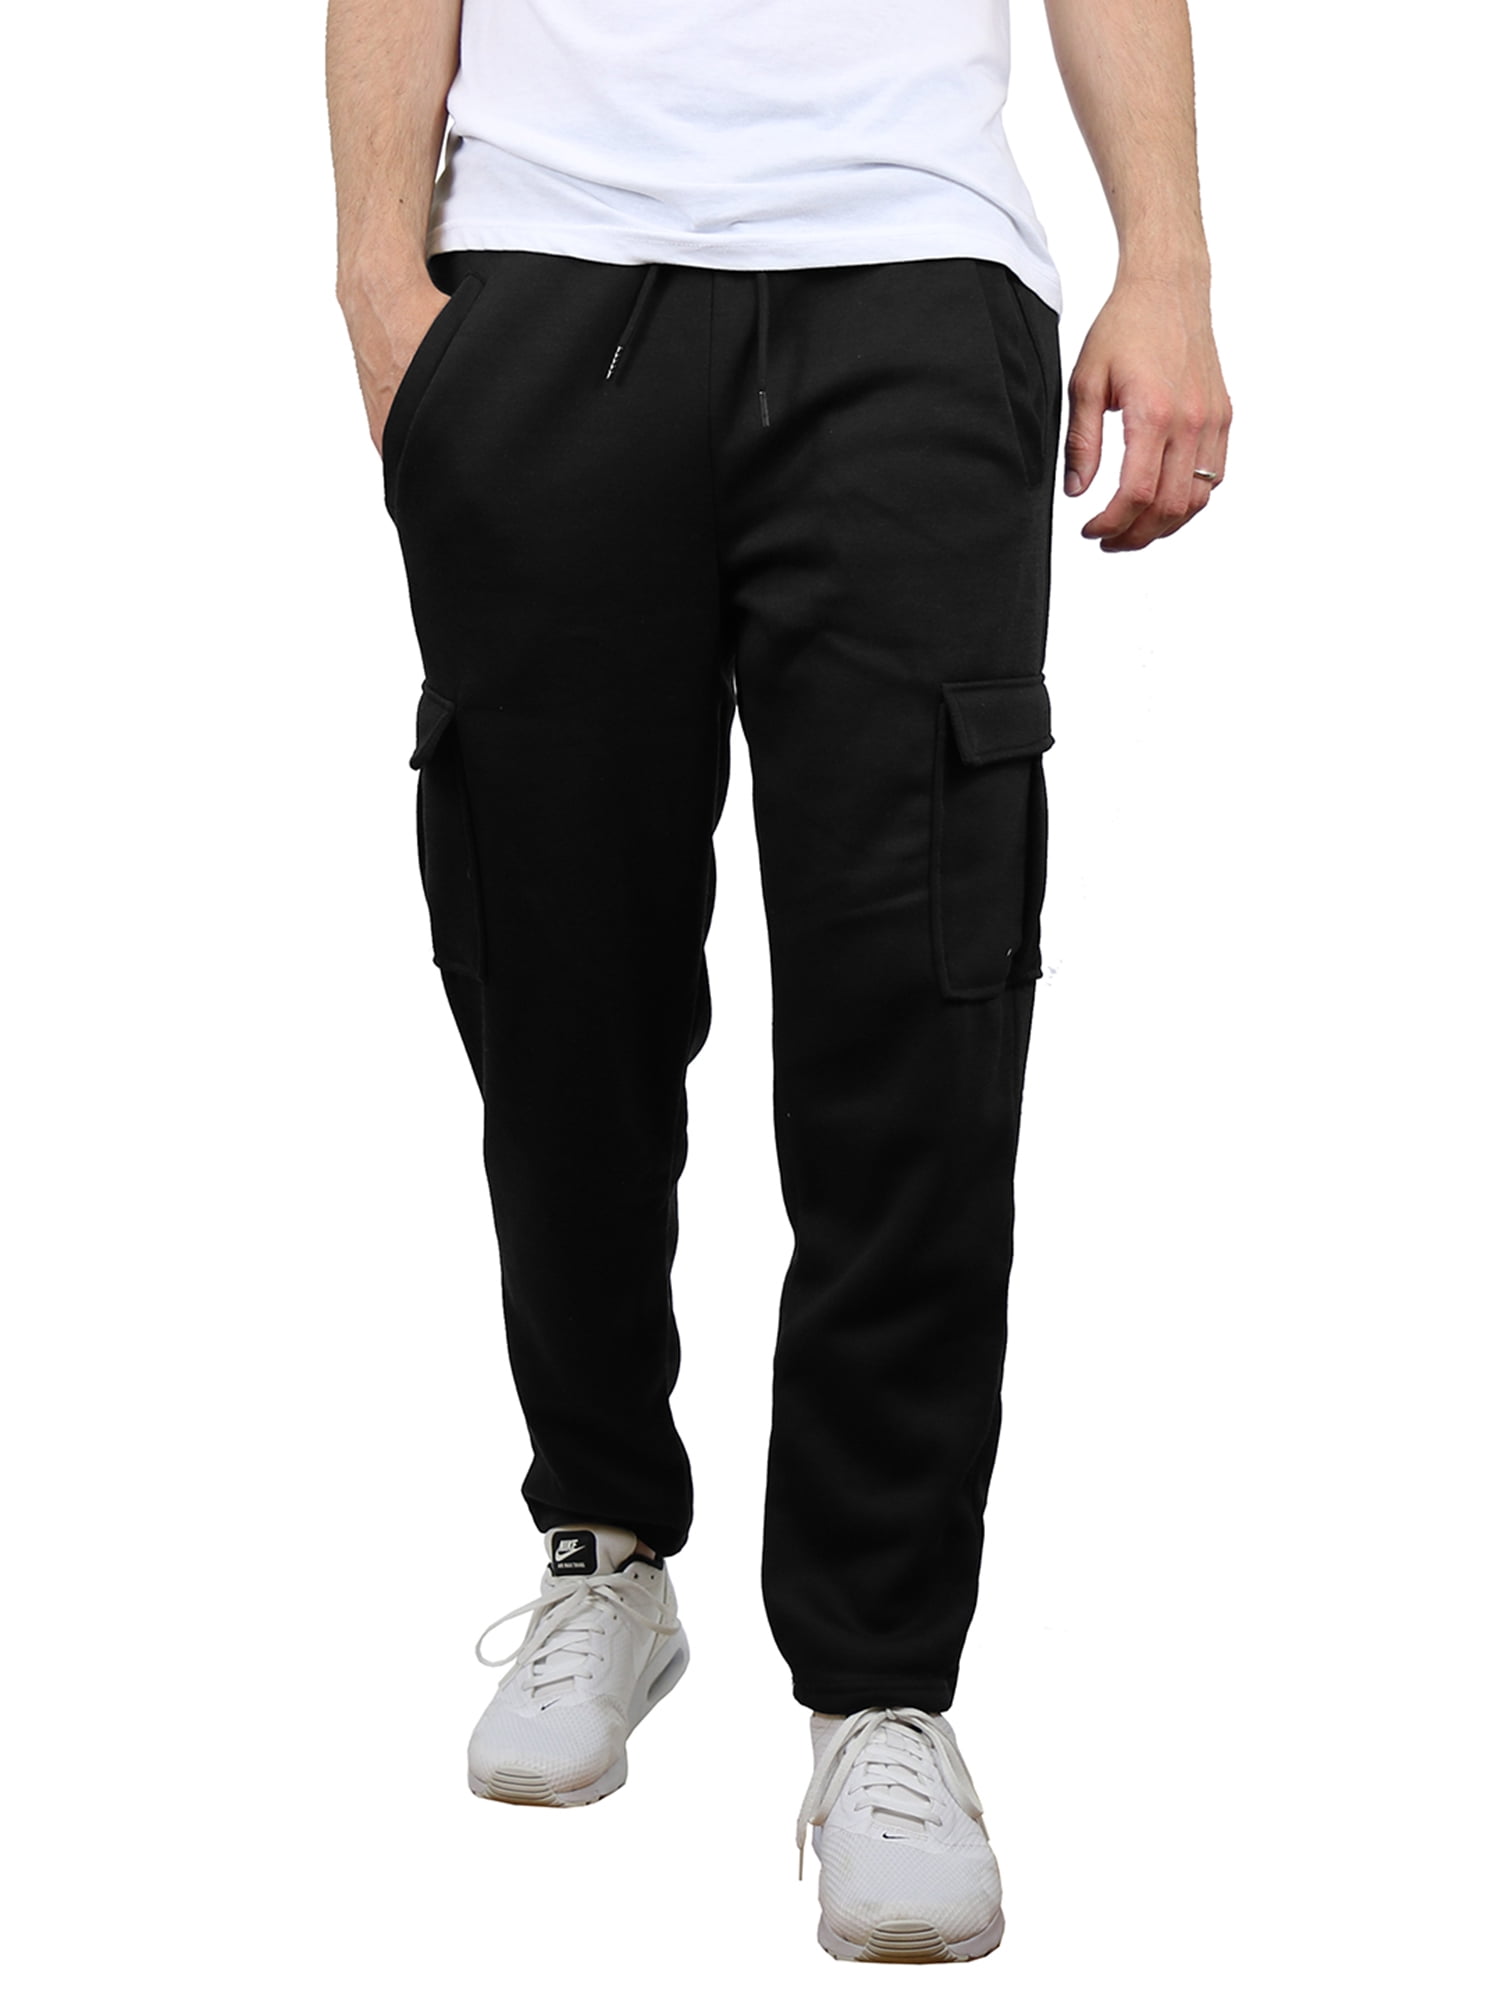 Men's Fleece Cargo Sweatpants With Open Bottom (Sizes, S-2XL) - Walmart.com